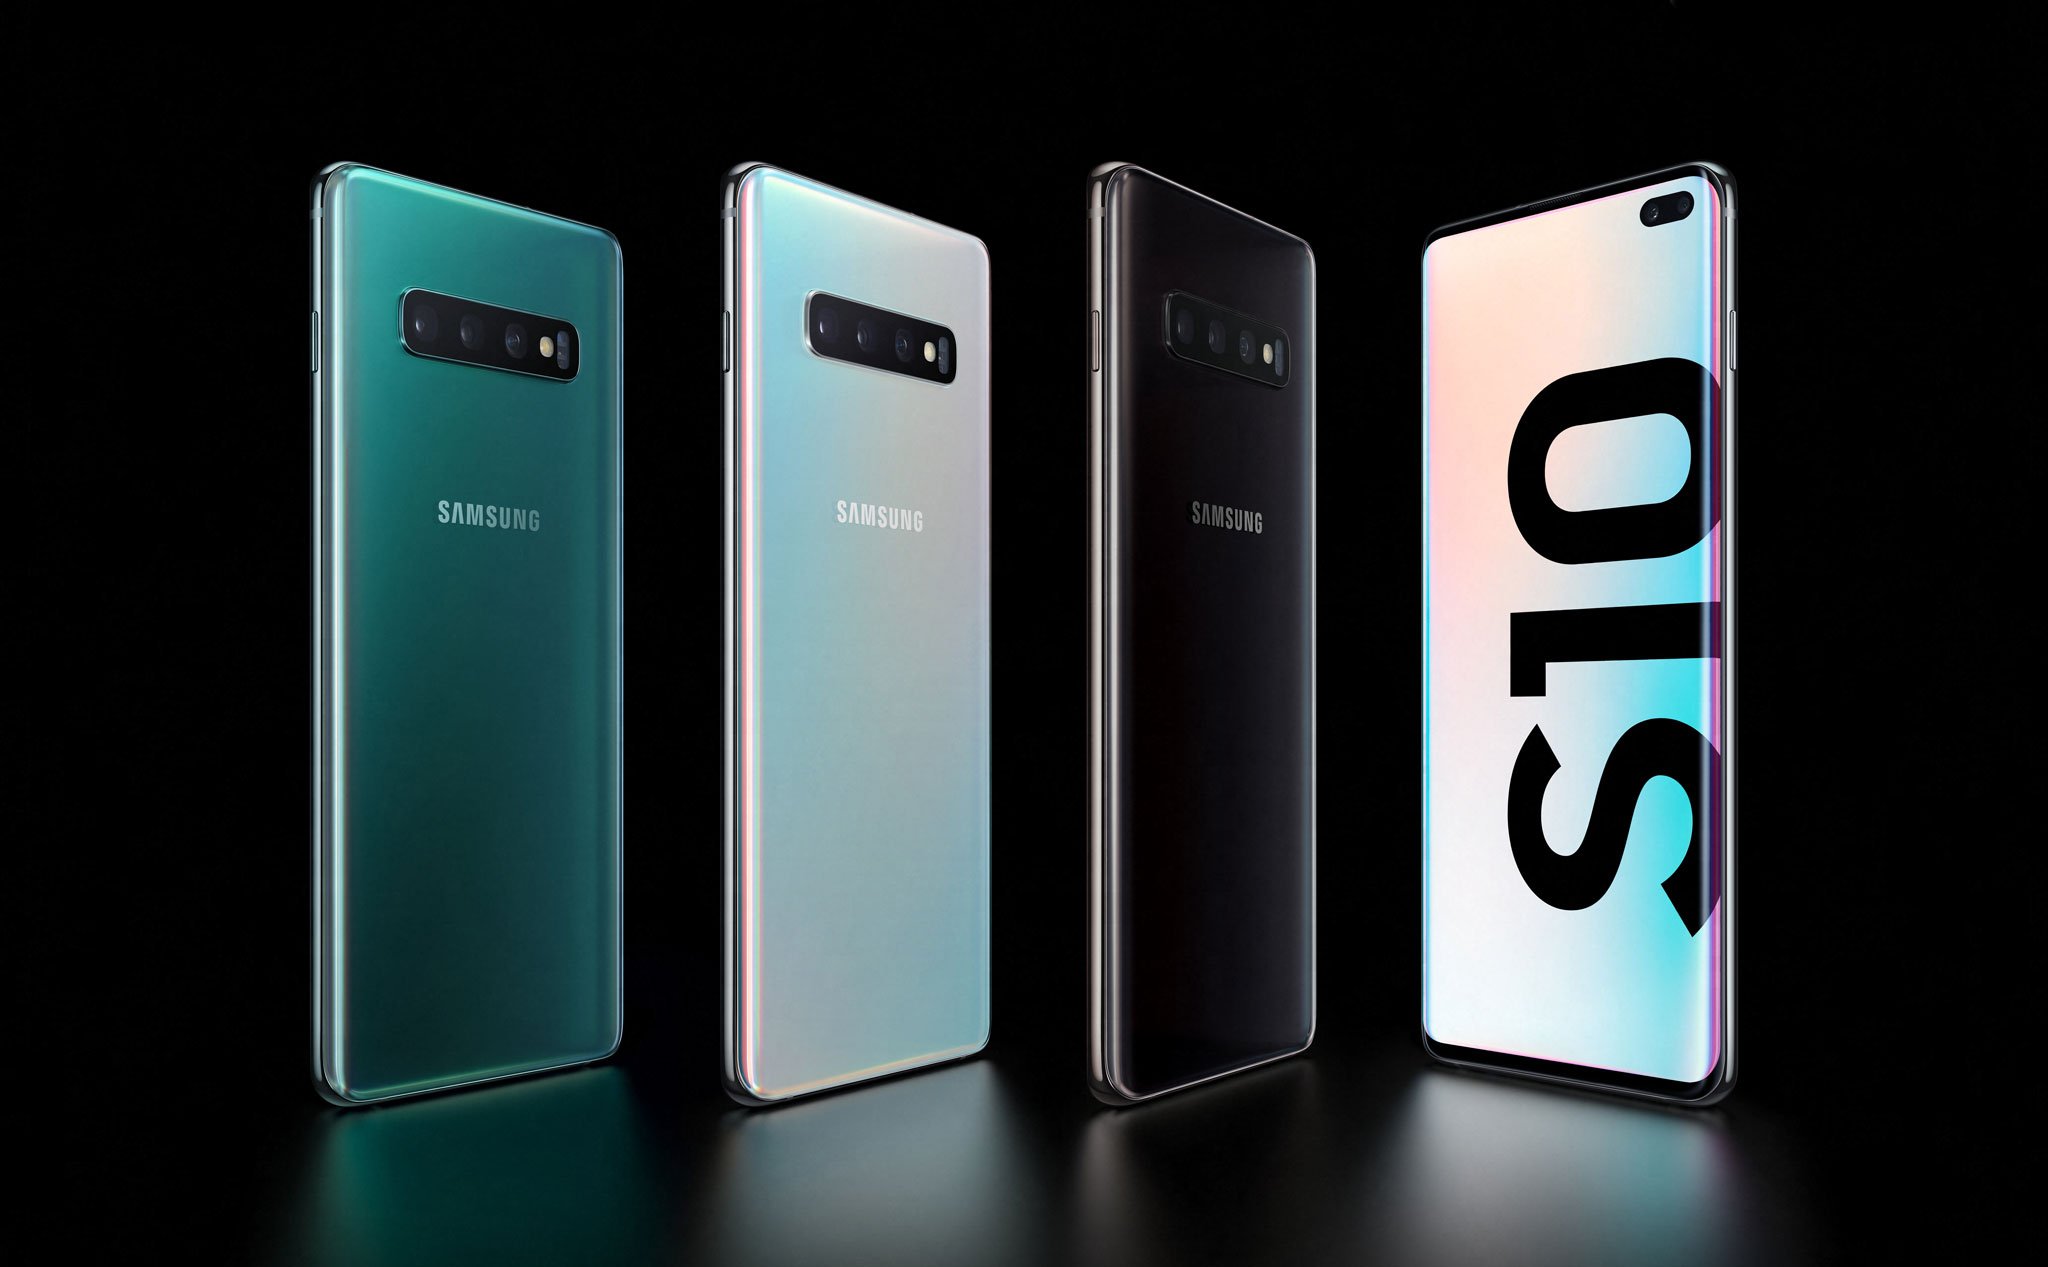 Samsung Galaxy S10/S10+ chính thức: màn hình Infinity-O, 3 camera sau, vân tay dưới màn hình